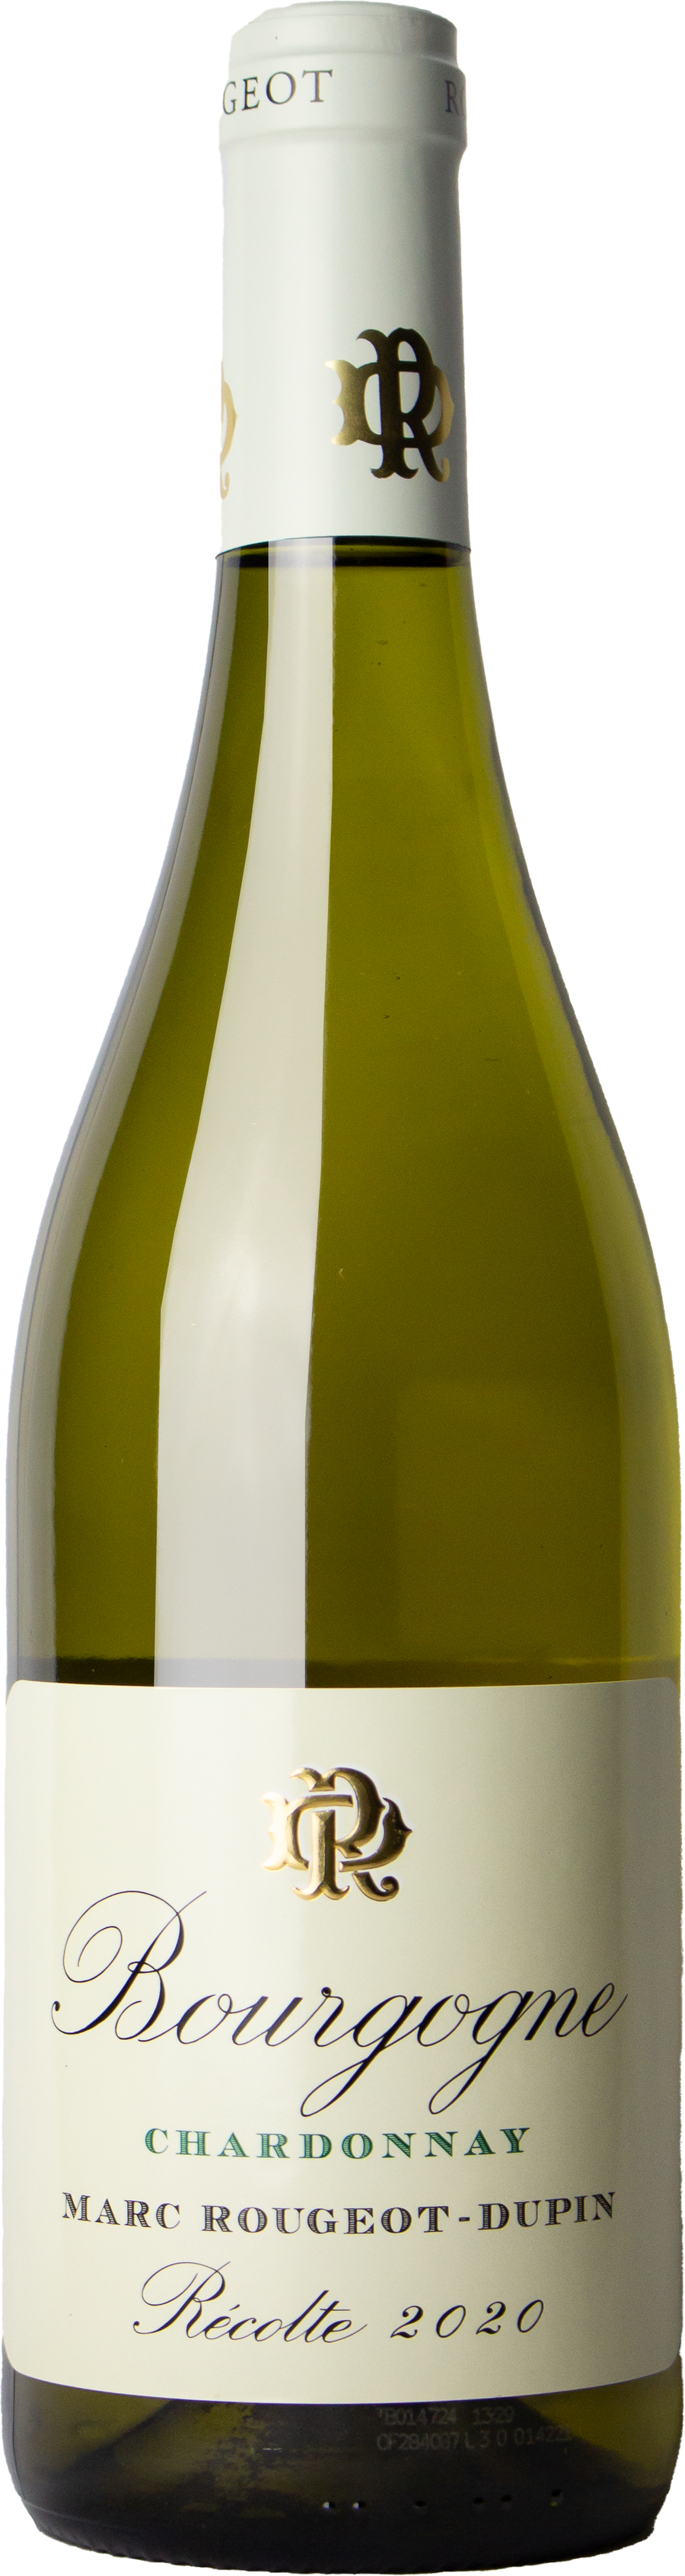 Rougeot-Dupin - Bourgogne Chardonnay 2020